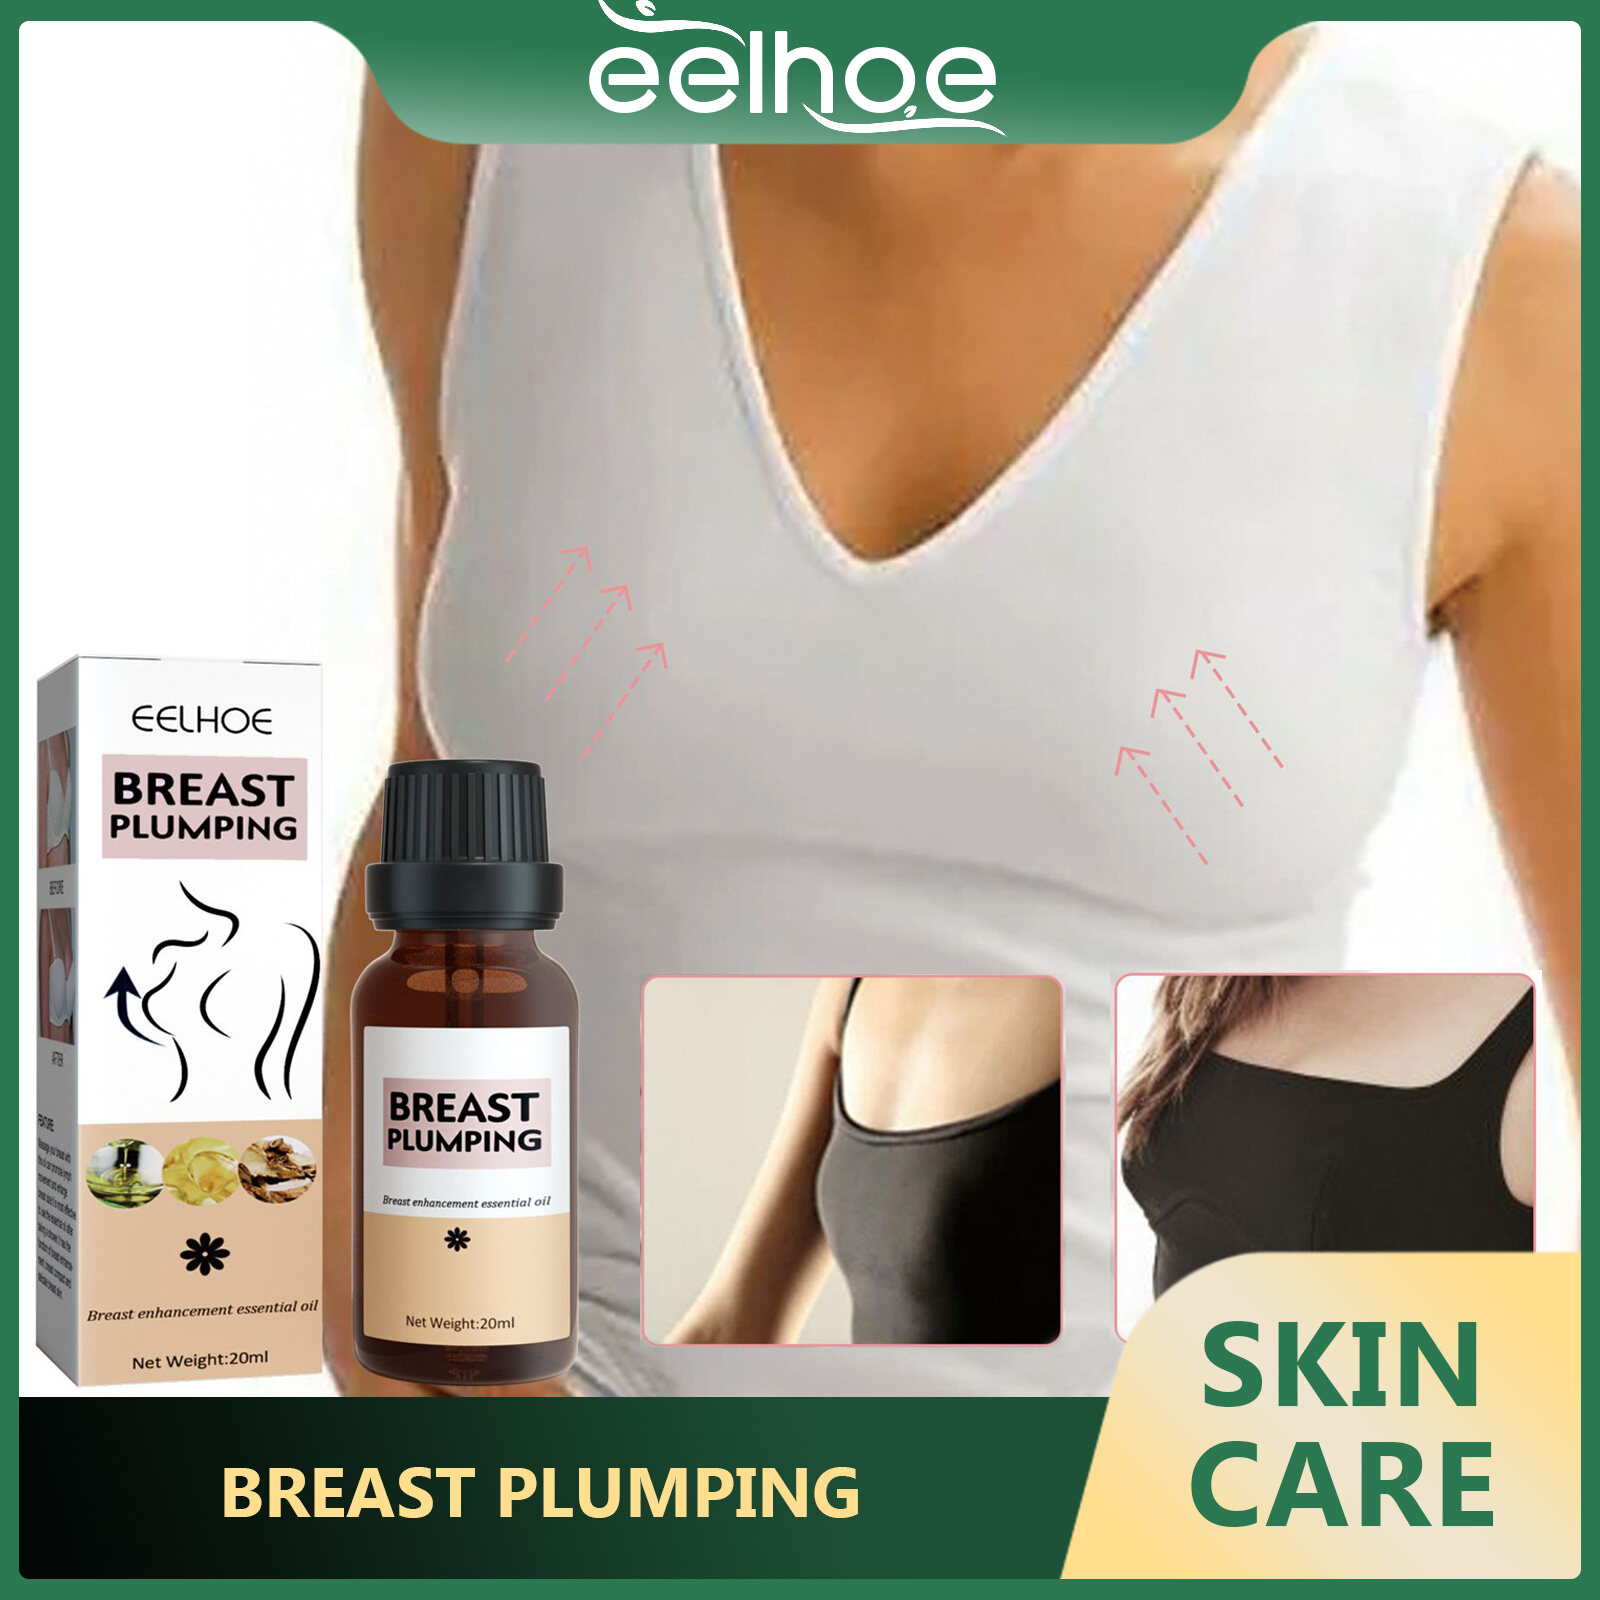 Eelhoe tinh dầu mát xa vú nhẹ nhàng chăm sóc dưỡng ẩm nở ngực đầy đặn và